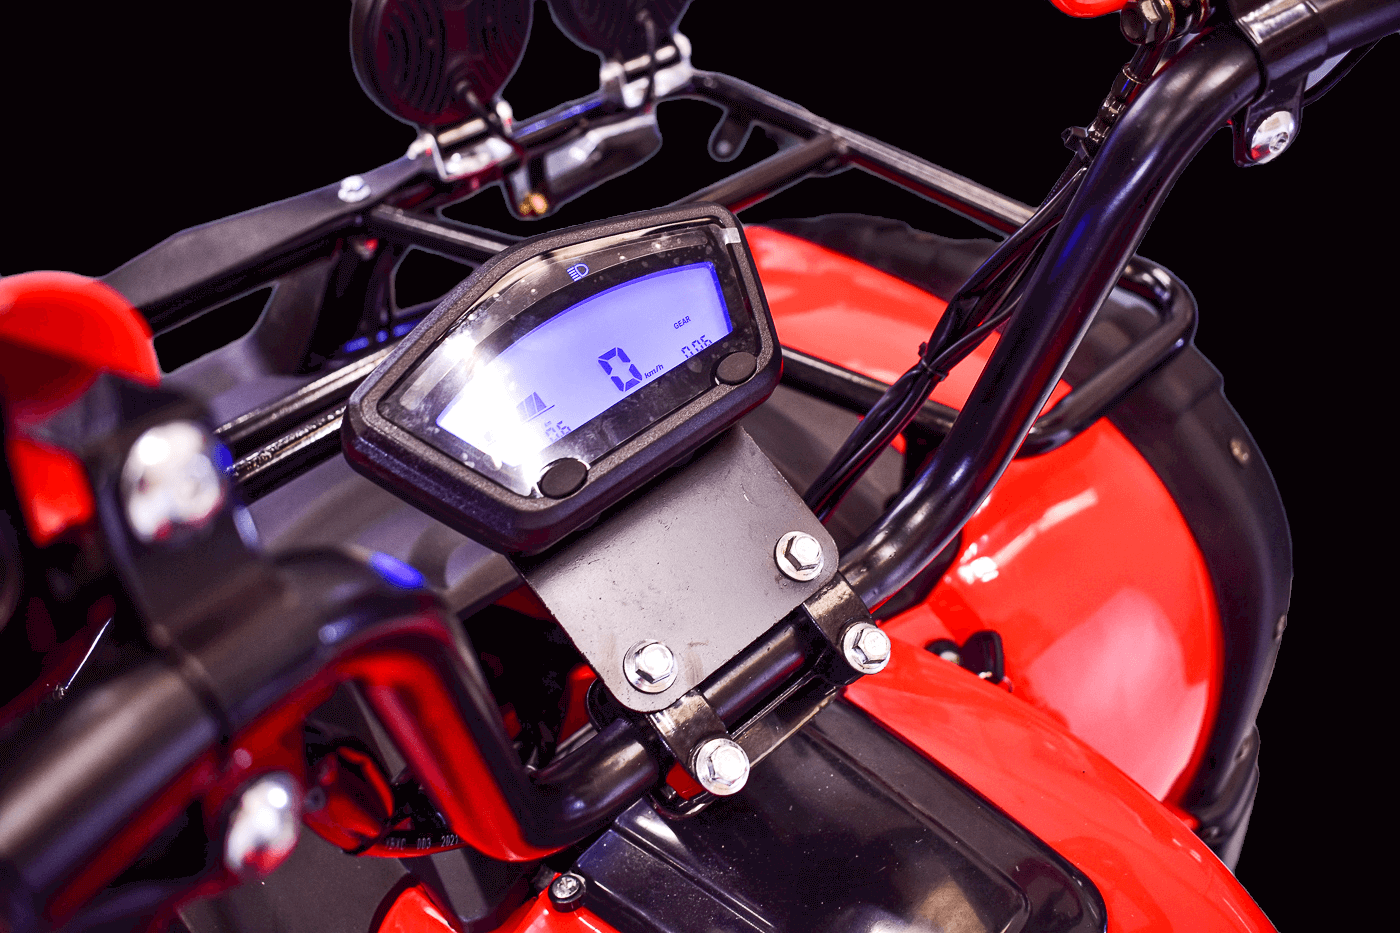 Eco Rider LCD Display